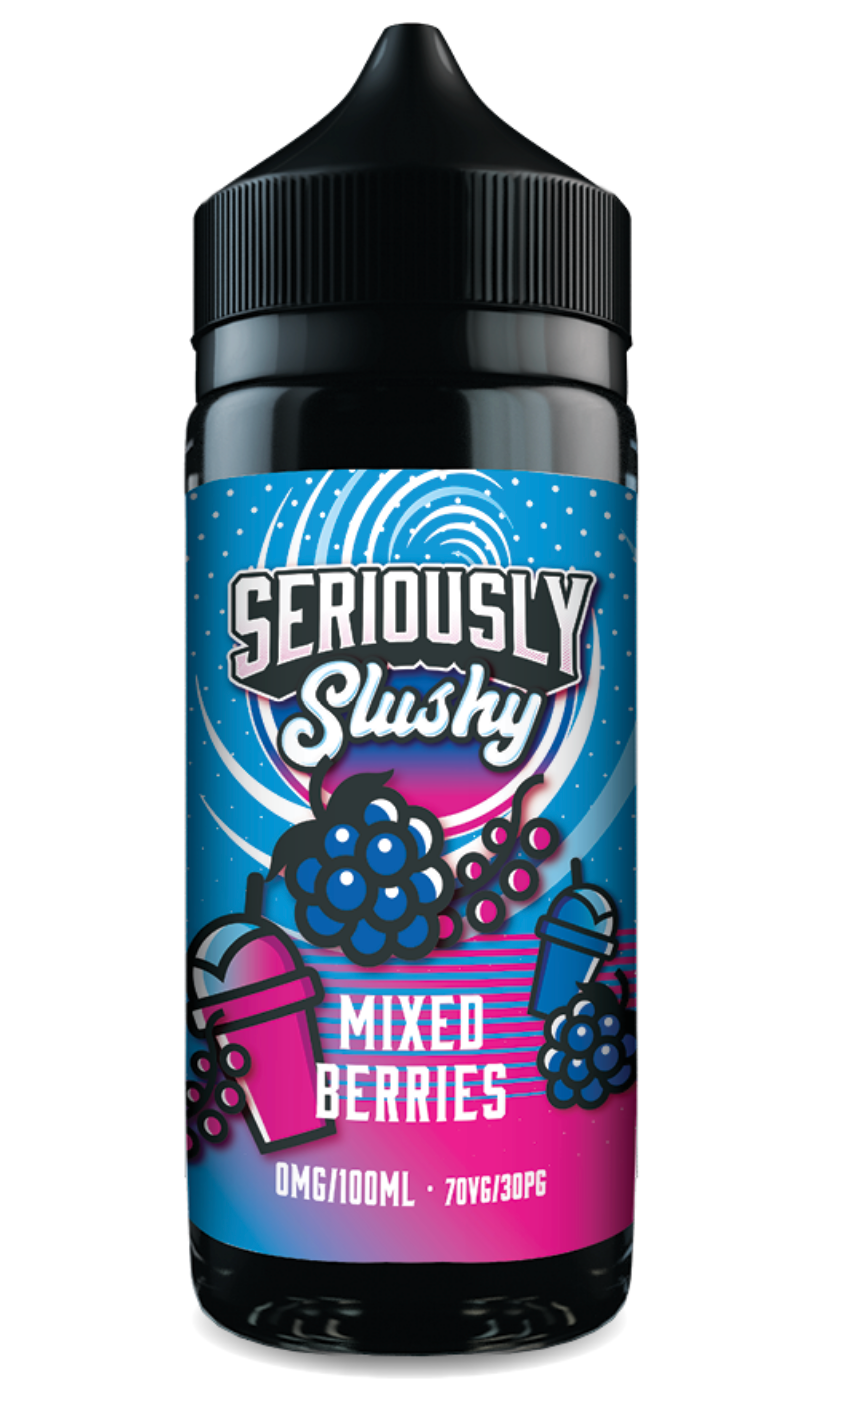 Seriously Slushy Mixed Berries E-liquid Shortfill 120ML/3MG